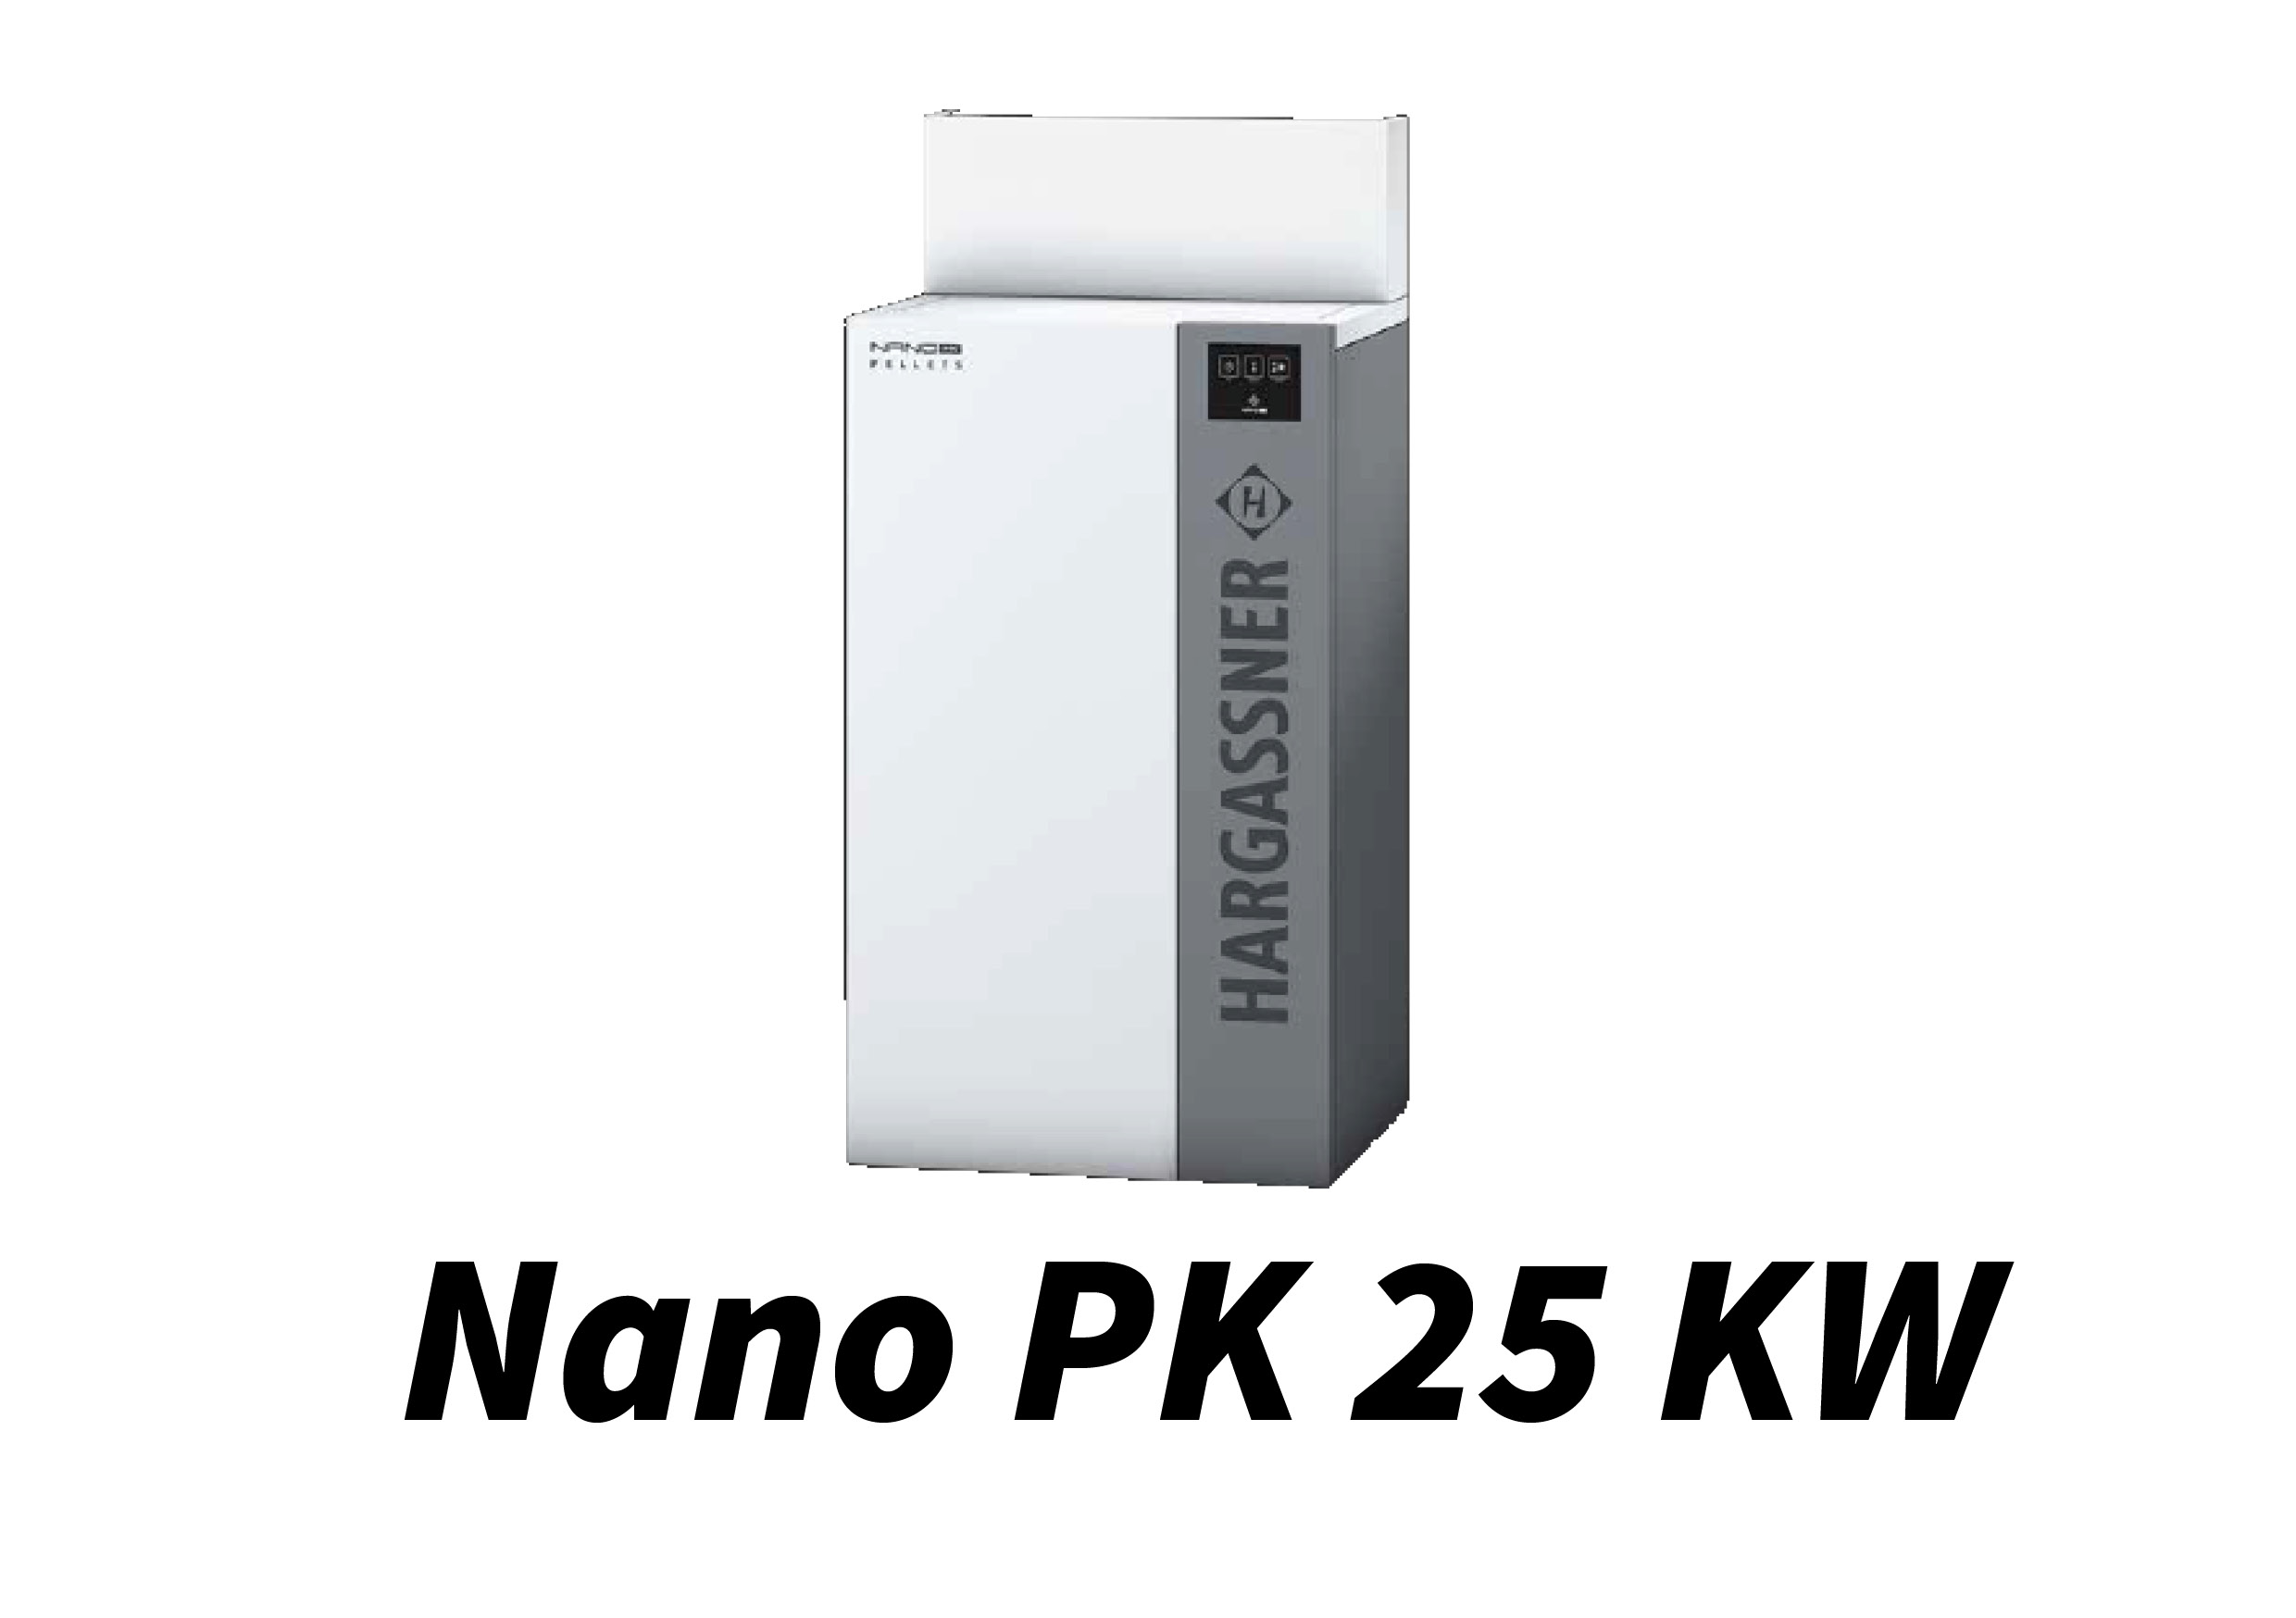 Nano PK 25 kW